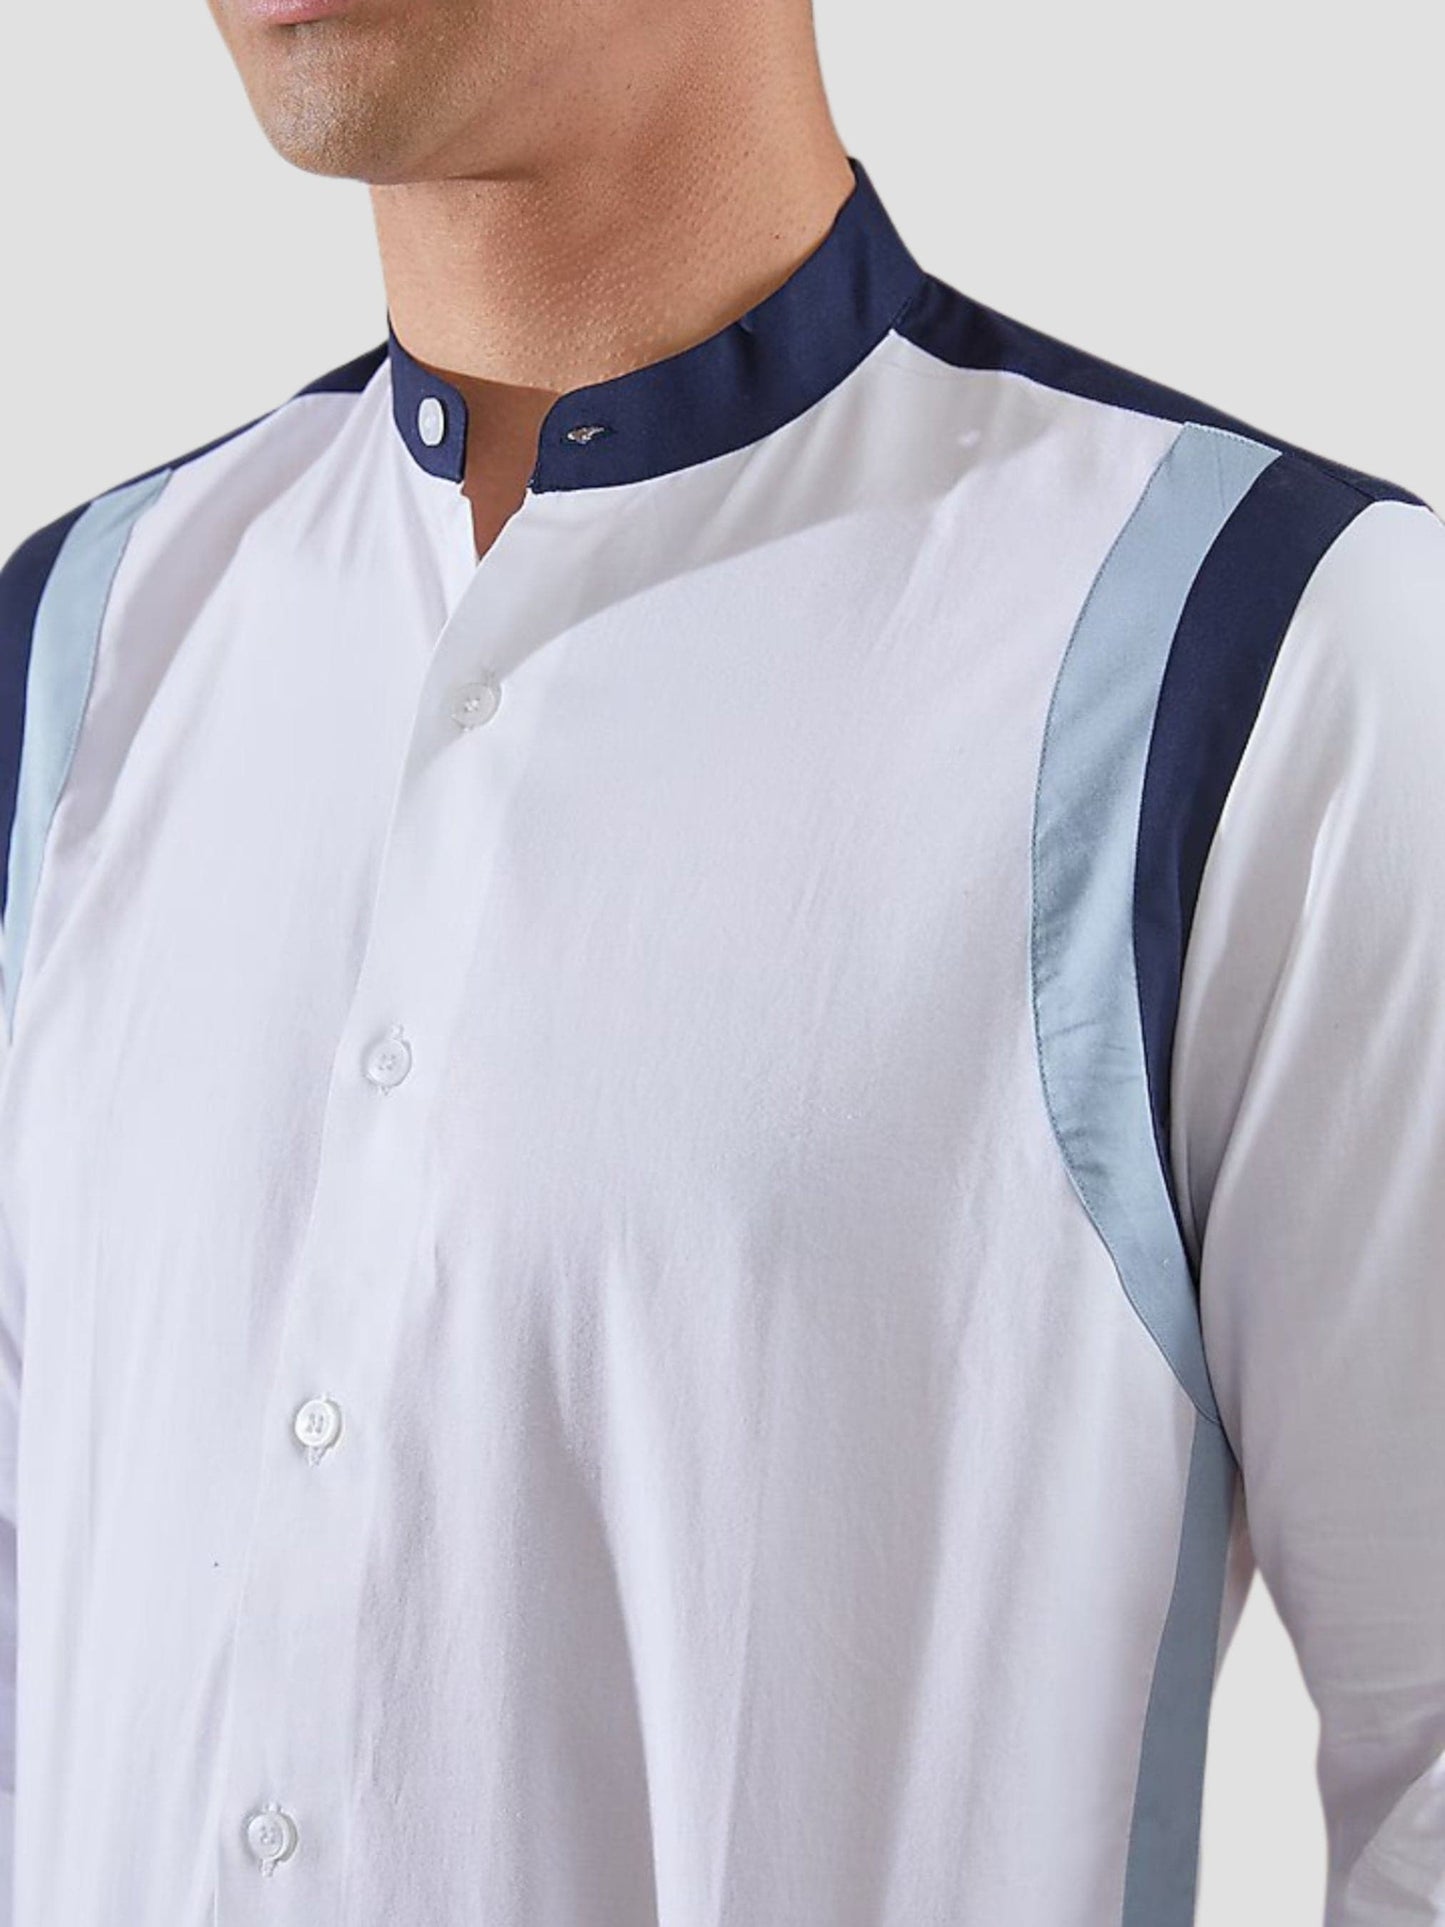 Colourblocked Band Collar Cotton Formal Shirt